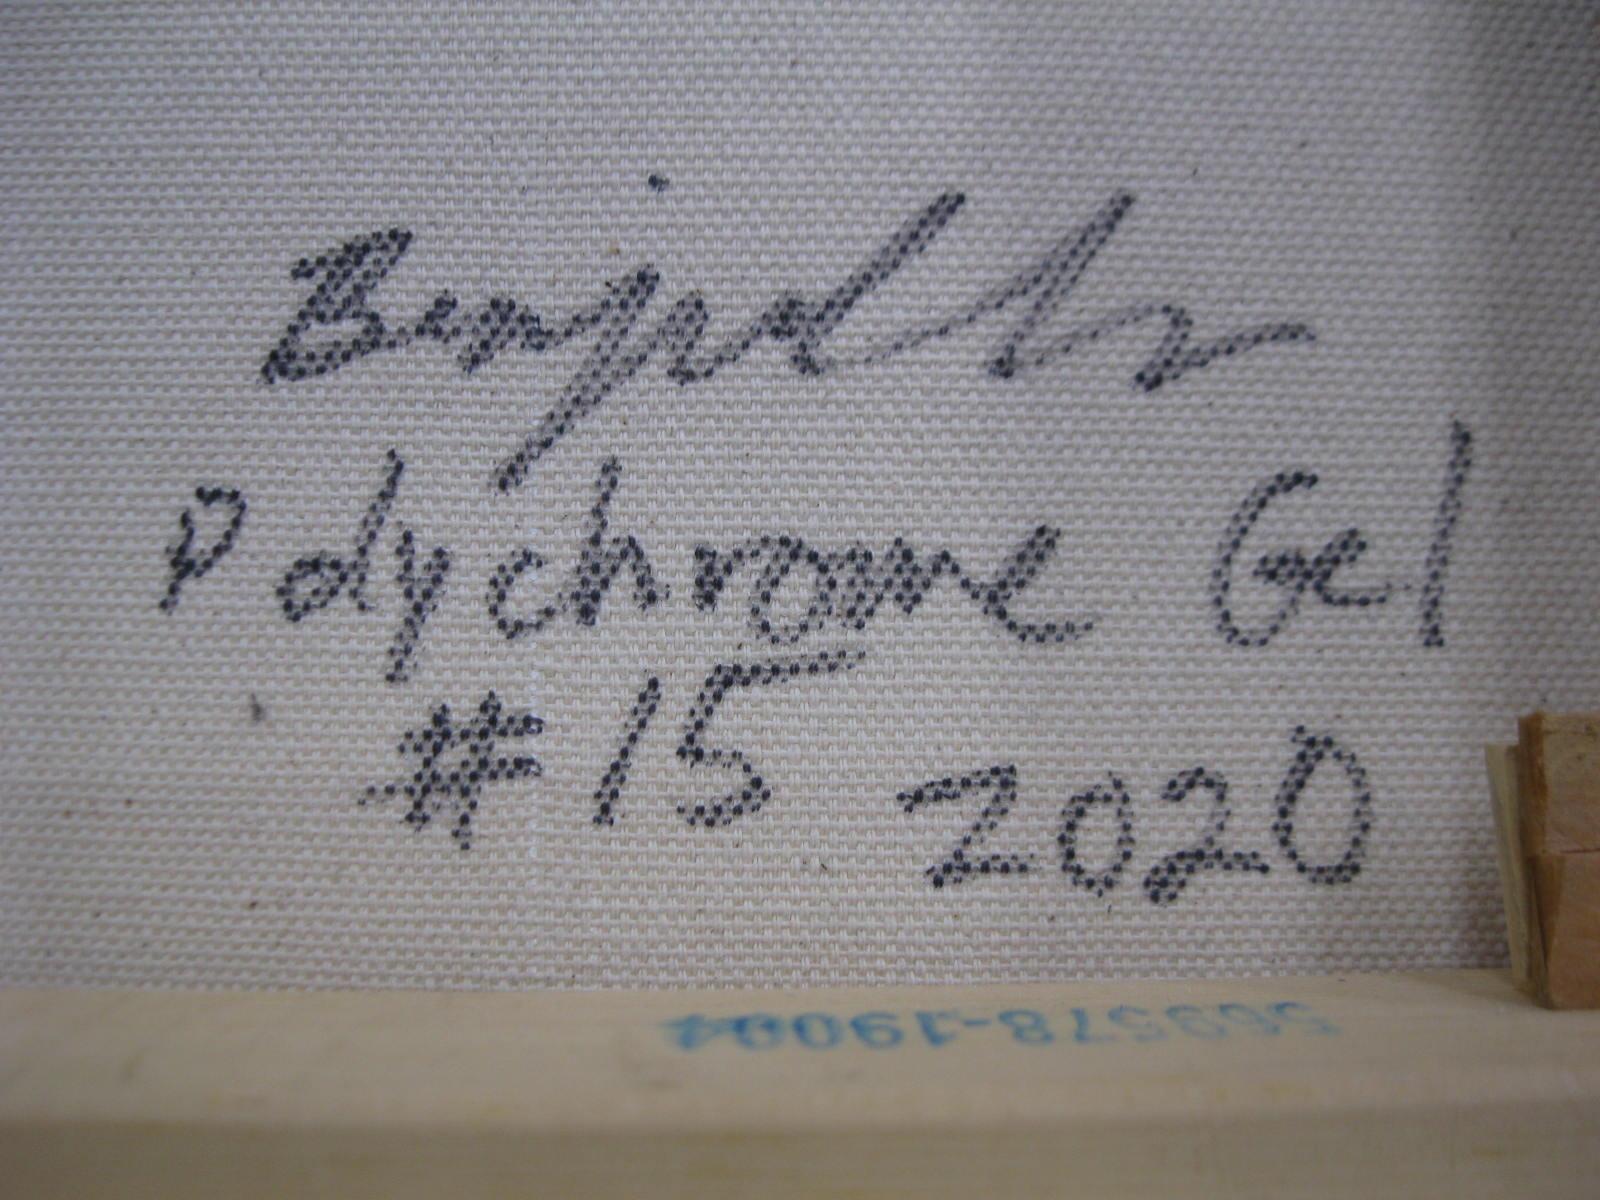 Polychrome Gel #15 ist ein Ölgemälde auf Leinwand mit einer Größe von 24 x 18 Zoll, signiert, betitelt und datiert auf der Überlappung verso, 